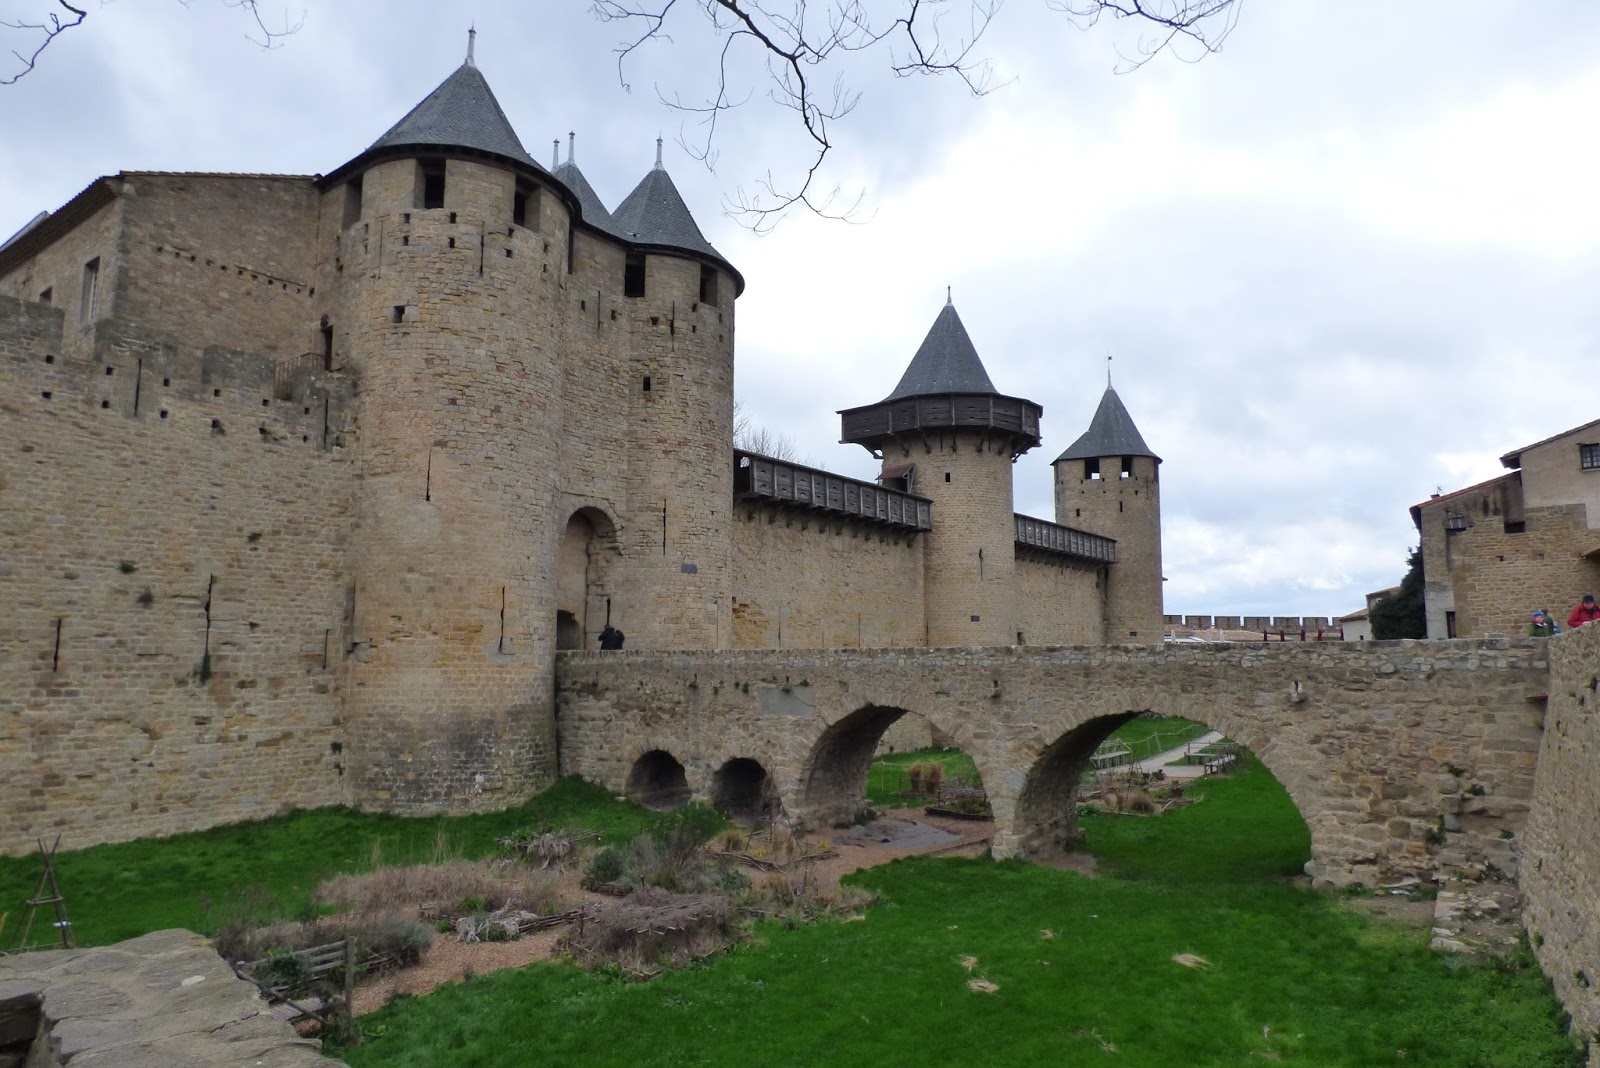 Pueblos y pueblos medievales!! Alucinantes - Blogs de Francia - CARCASSONNE, FRANCIA (13)